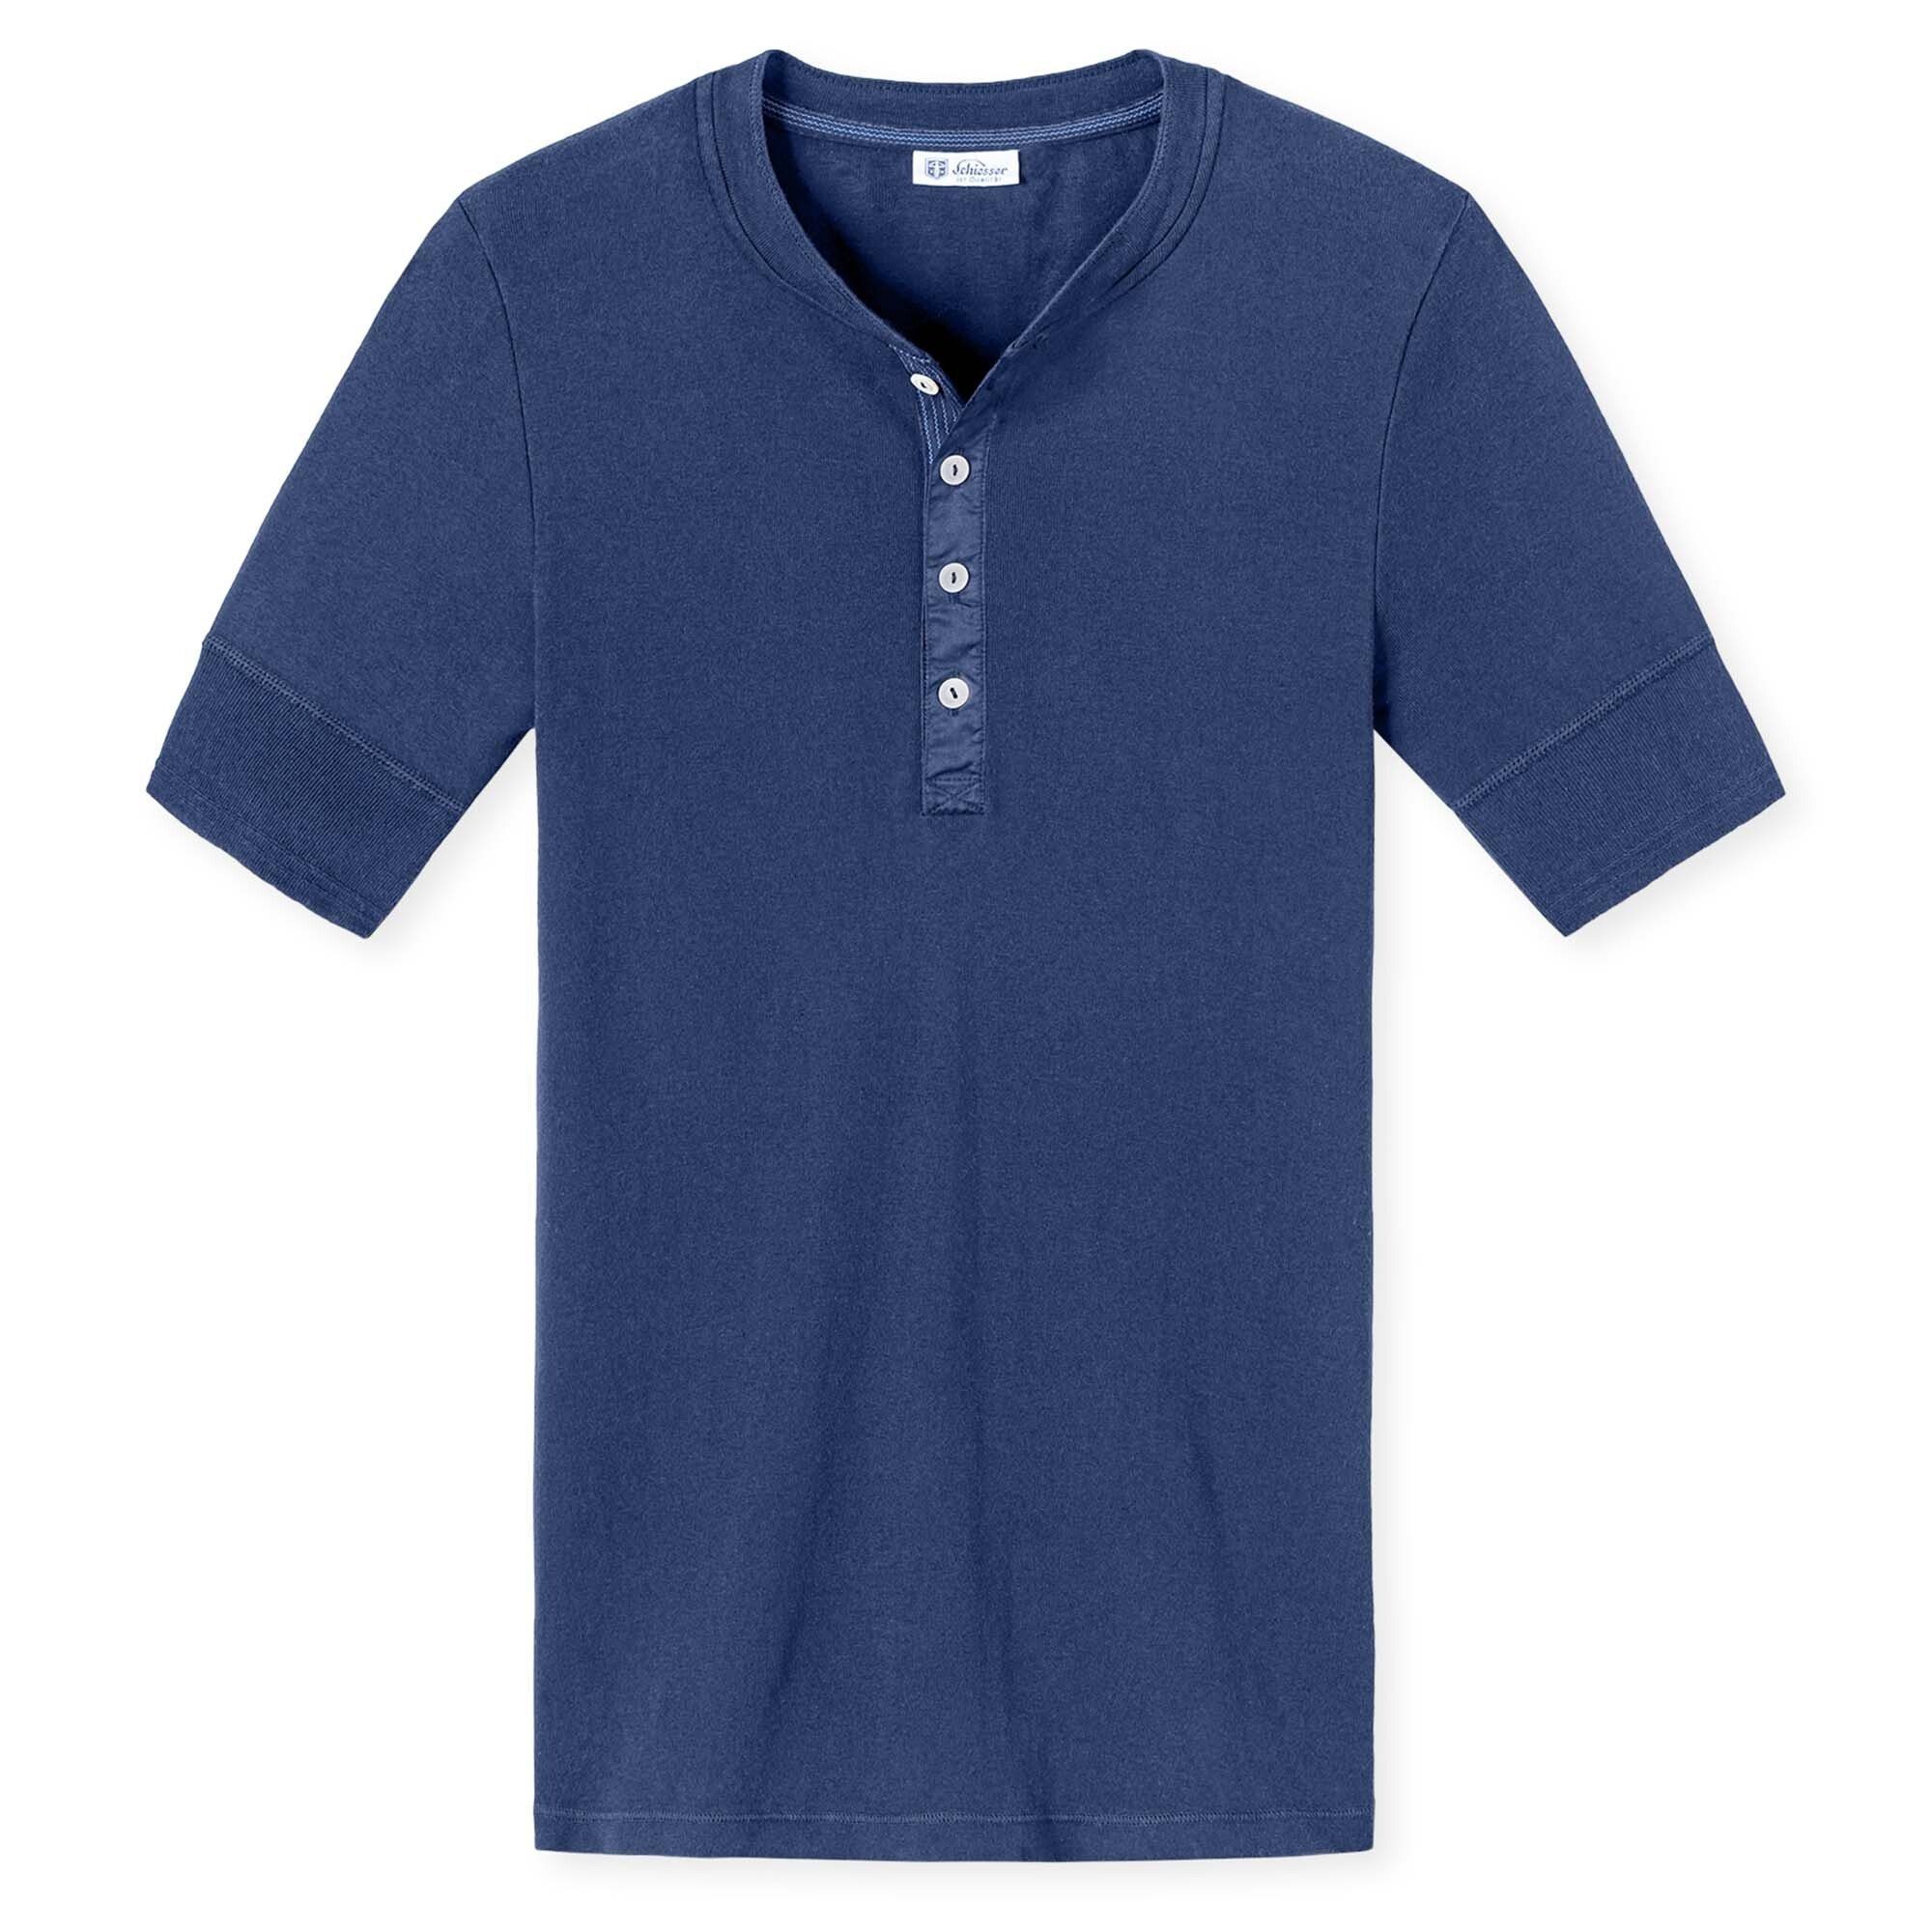 SCHIESSER REVIVAL T-Shirt Herren Shirt, 1/2 Arm, Kurzarm Unterhemd Blau